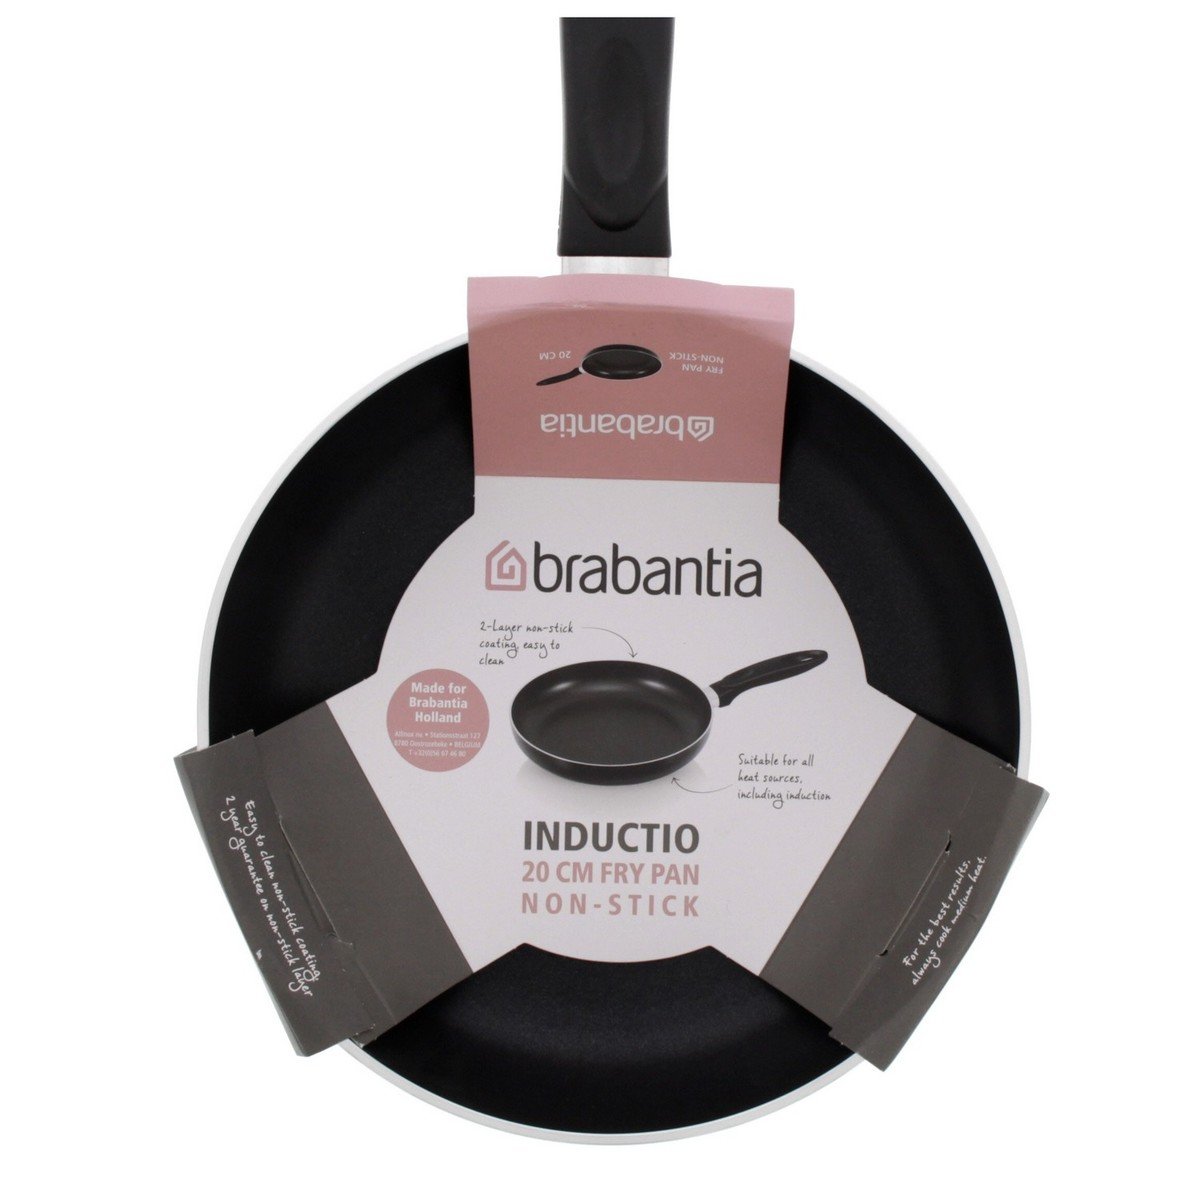 Brabantia Non-Stick Fry Pan, 20 cm, BR10915